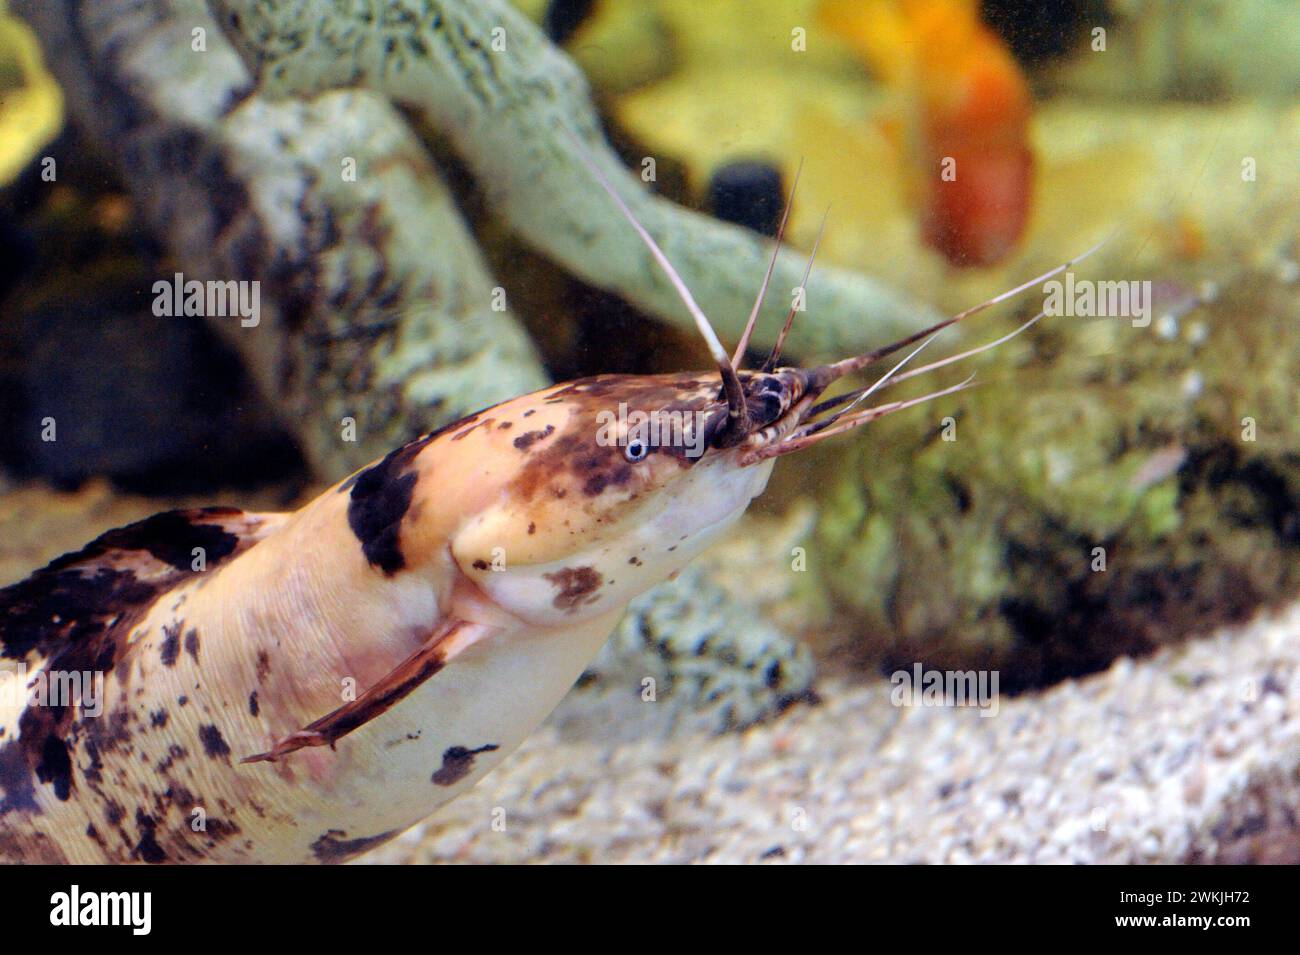 Le poisson-chat marchant (Clarias batrachus) est un poisson d'eau douce omnivore originaire des rivières d'Asie du Sud-est. Banque D'Images